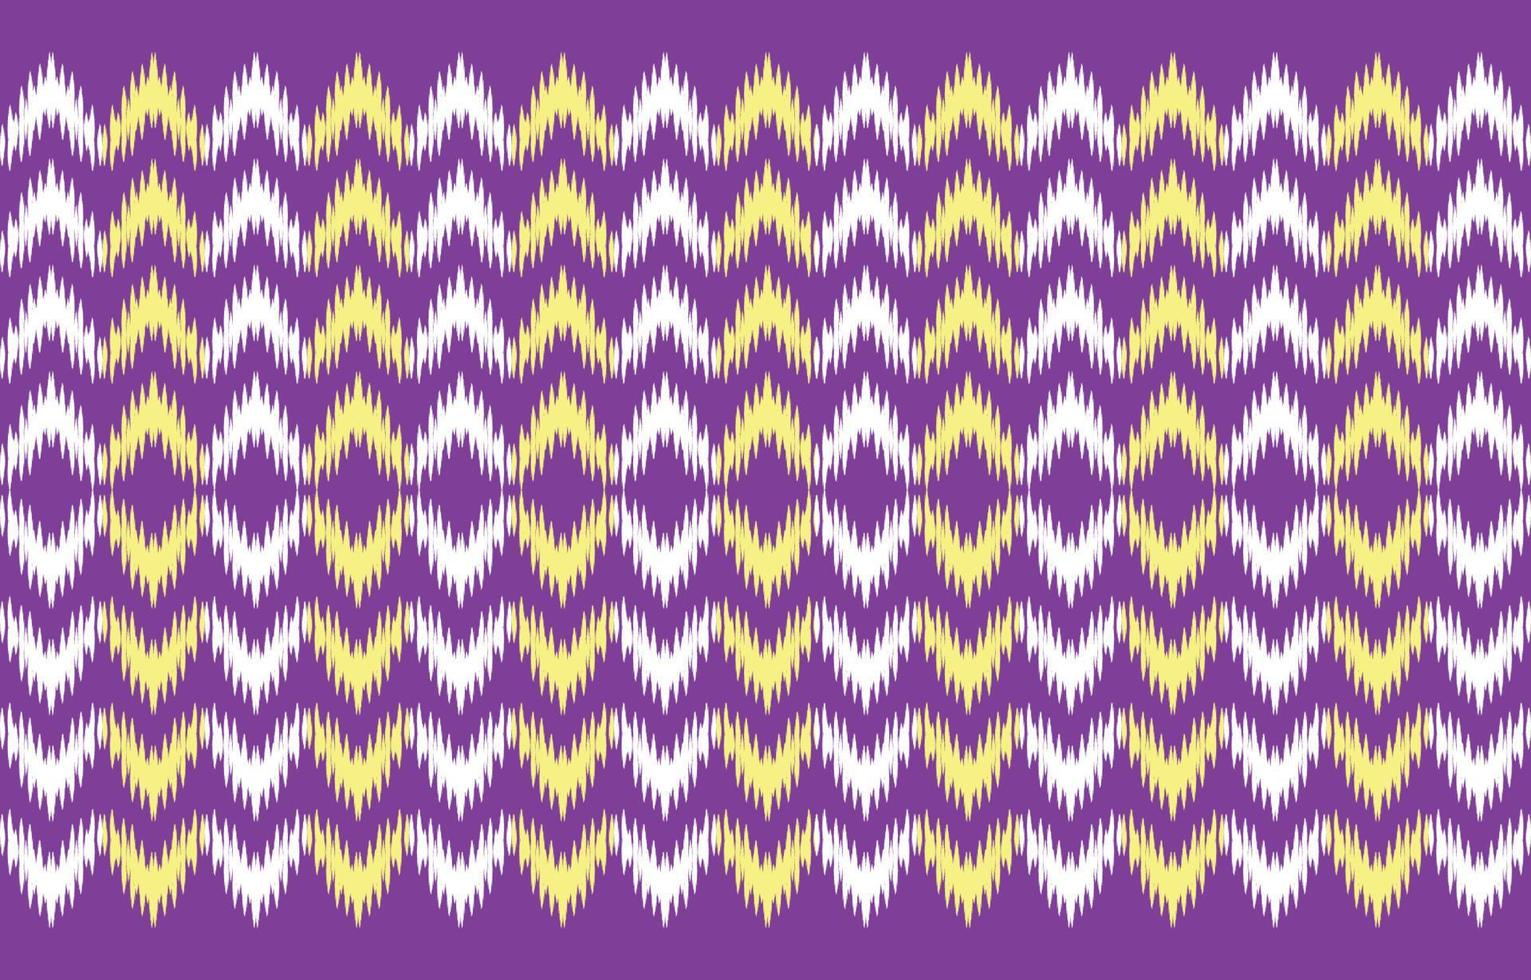 púrpura abstracto étnico. patrón geométrico impecable en estilo tribal, bordado popular y mexicano. impresión de ornamento de arte geométrico azteca. diseño para moqueta, papel pintado, ropa, envoltura, tela, cubierta. vector